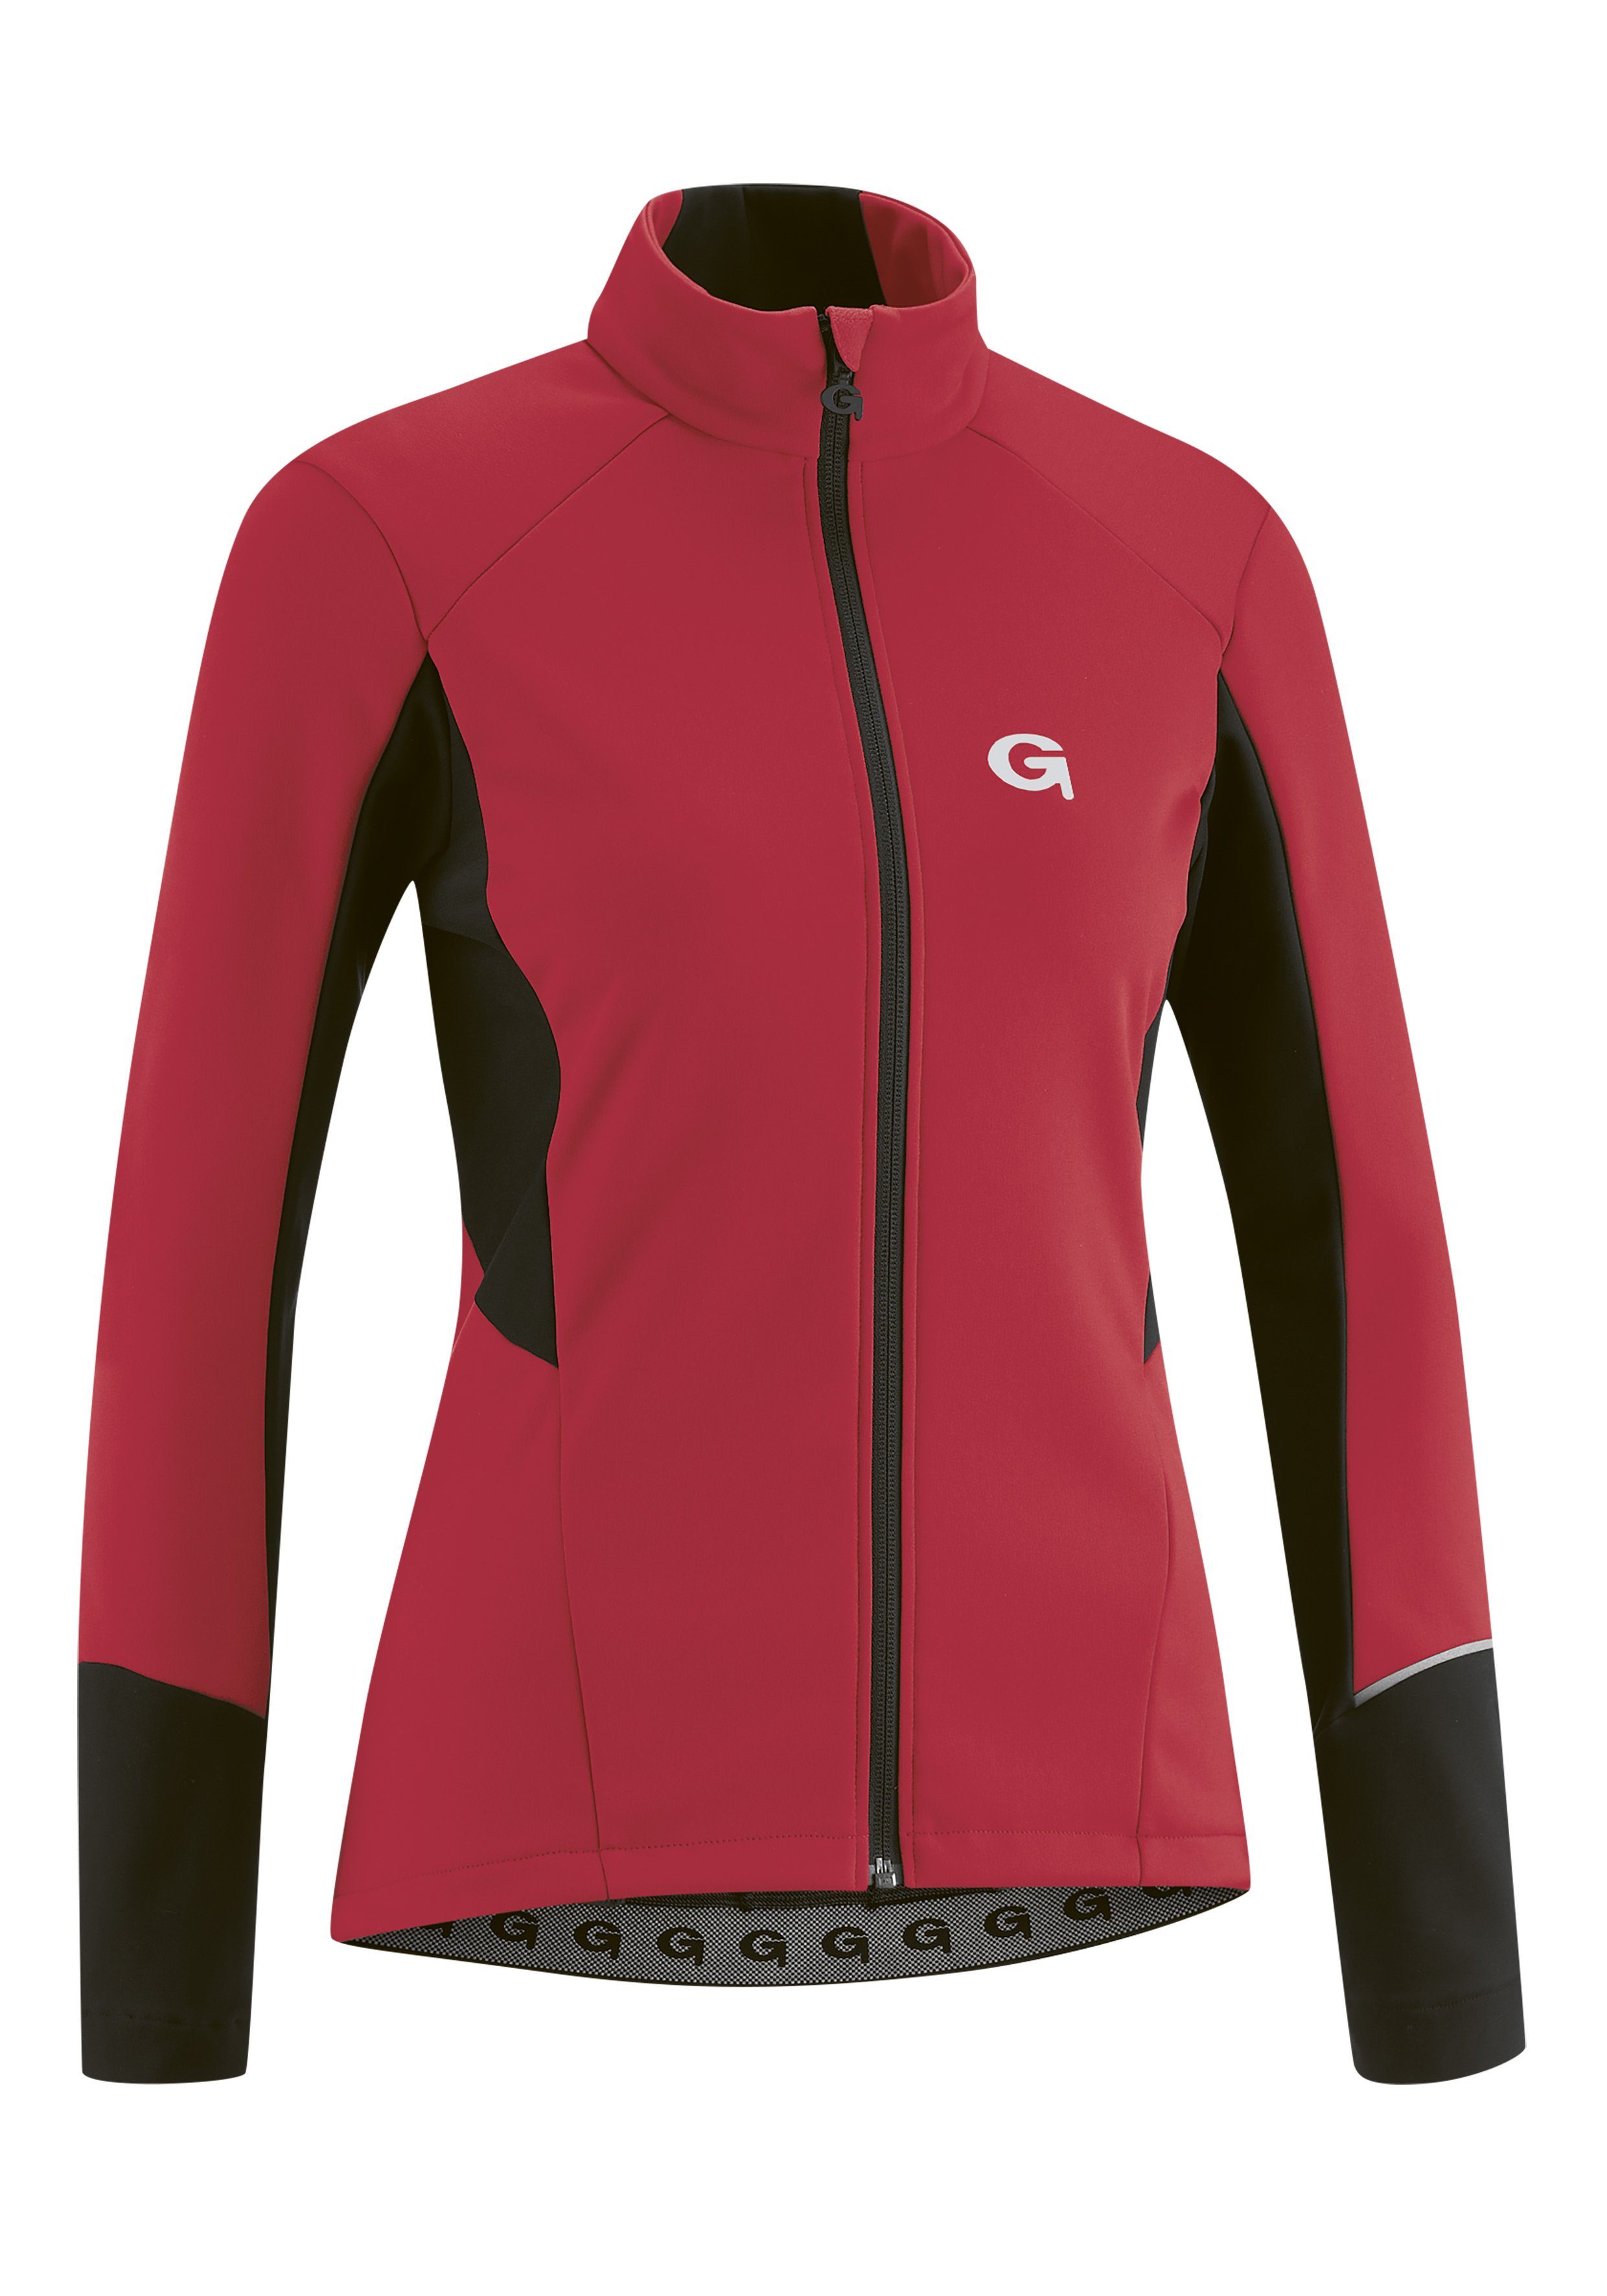 Gonso Fahrradjacke FURIANI Damen Softshell-Jacke, Windjacke atmungsaktiv  und wasserabweisend, Materialmix aus hochwertigem G-SHELL und Thermofleece